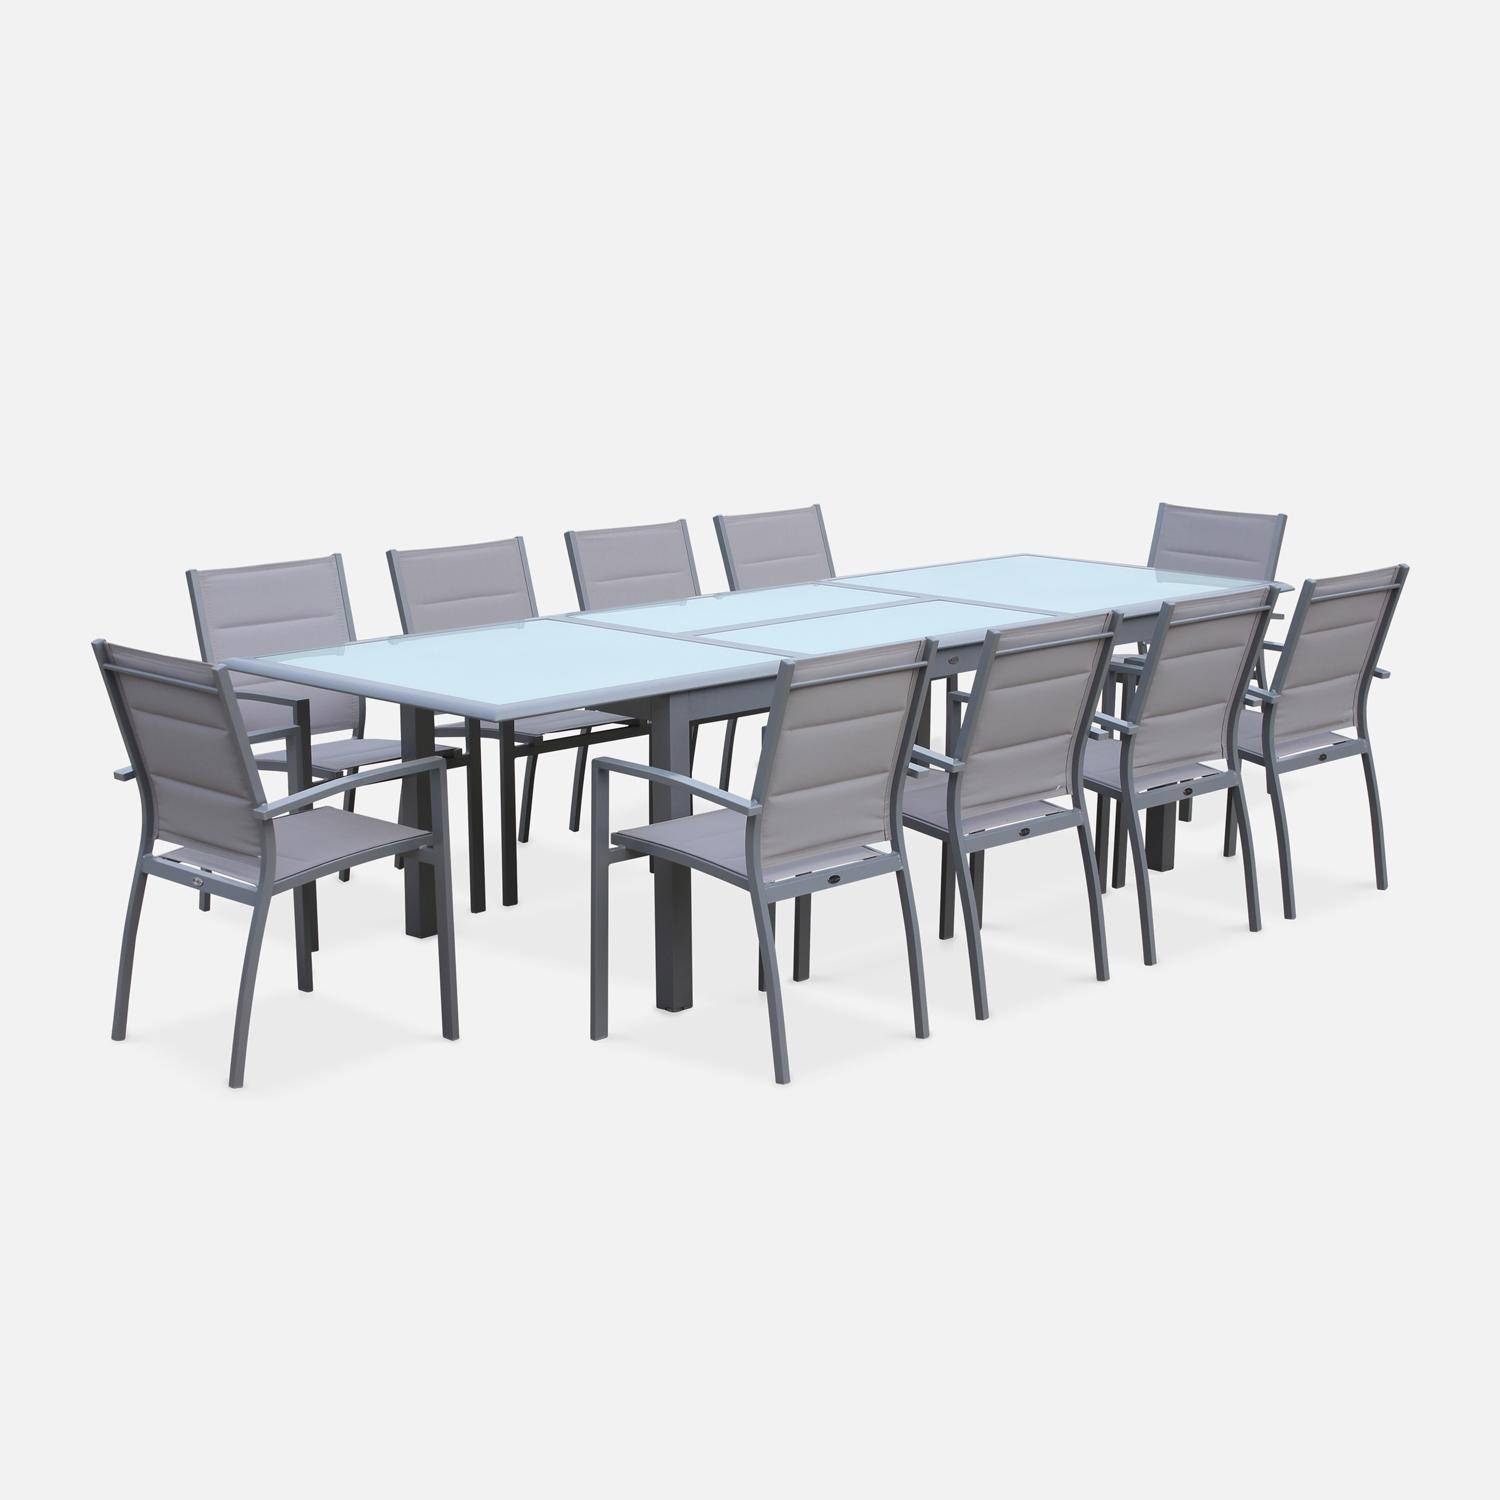 Set da giardino con tavolo allungabile - modello: Philadelphie, colore: Grigio chiaro - Tavolo in alluminio, dimensioni: 200/300cm, ripiano in vetro, prolunga e 8 poltrone in textilene Photo3